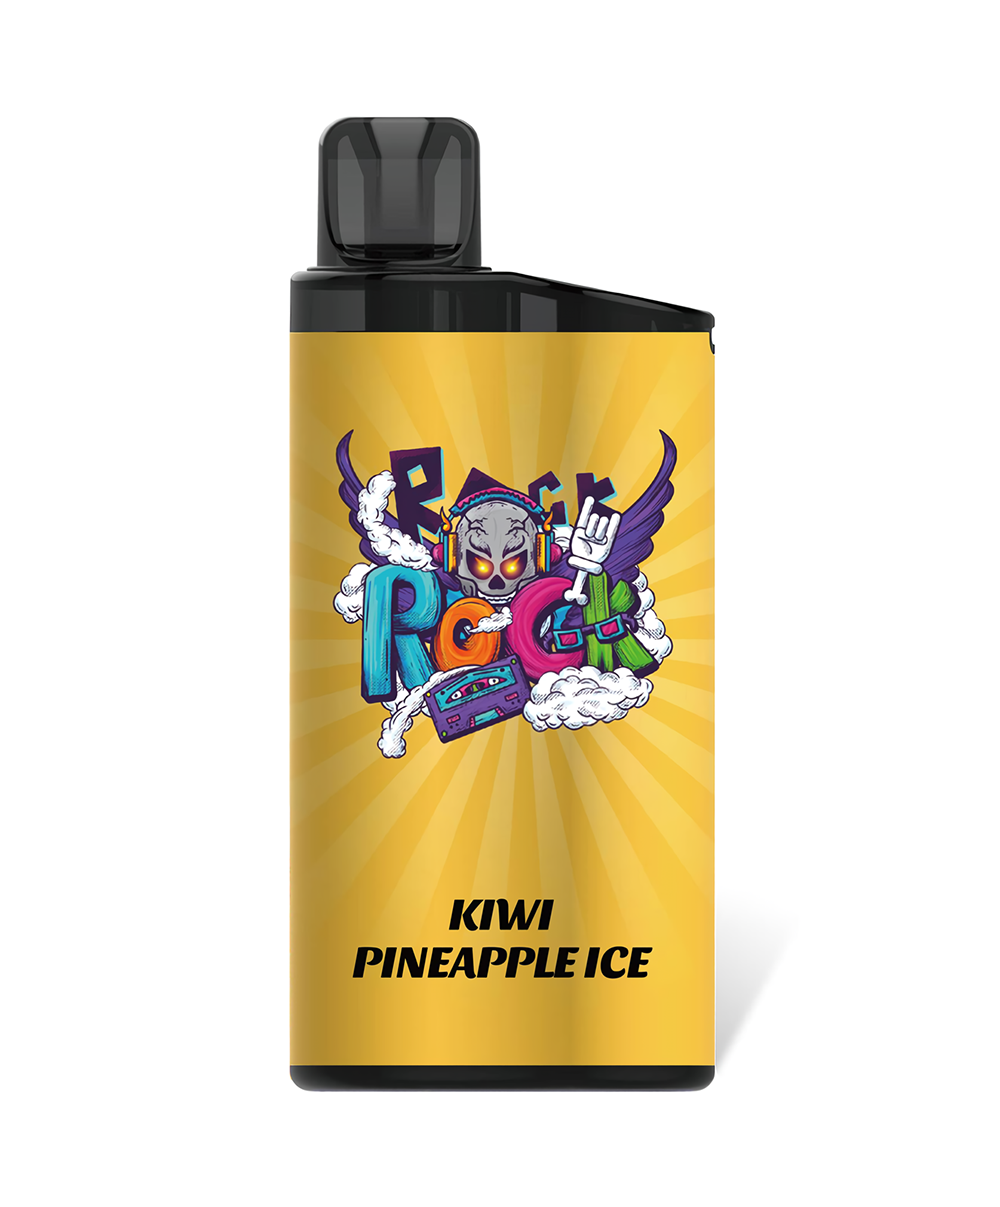 Kiwi pineapple ice